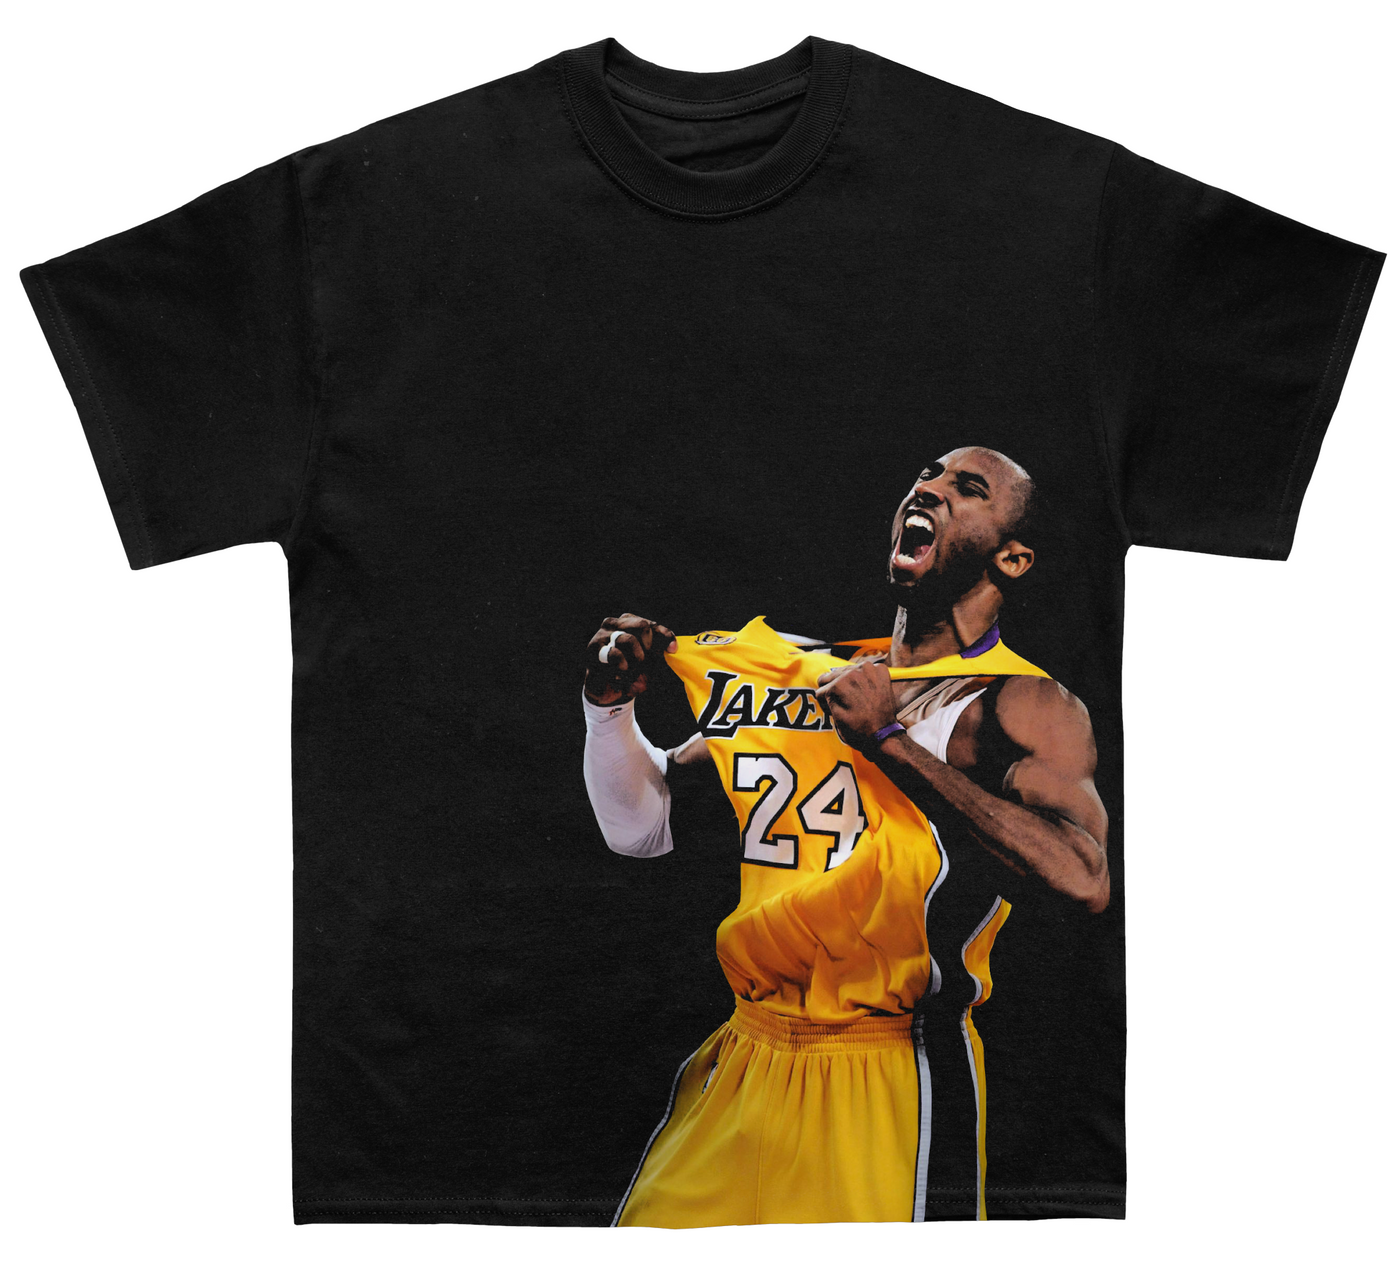 Kobe T-shirt